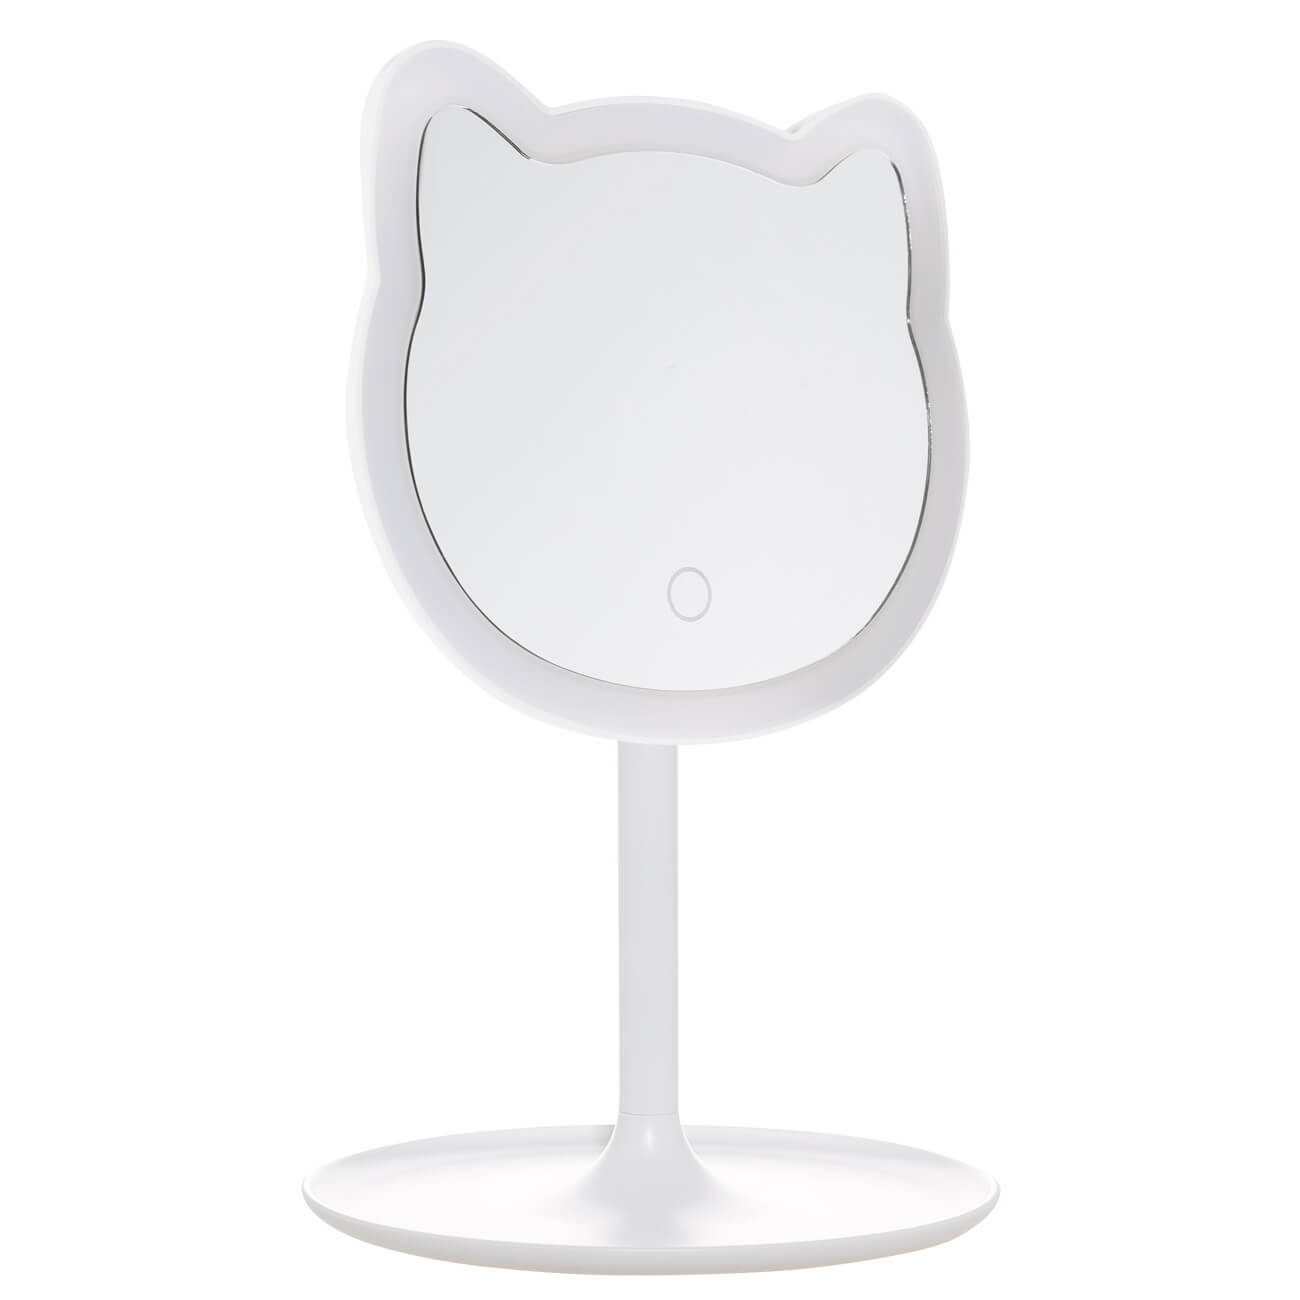 Зеркало настольное, 29 см, с подсветкой, на подставке, пластик, белое, Кот, Cat настольное косметическое зеркало savol